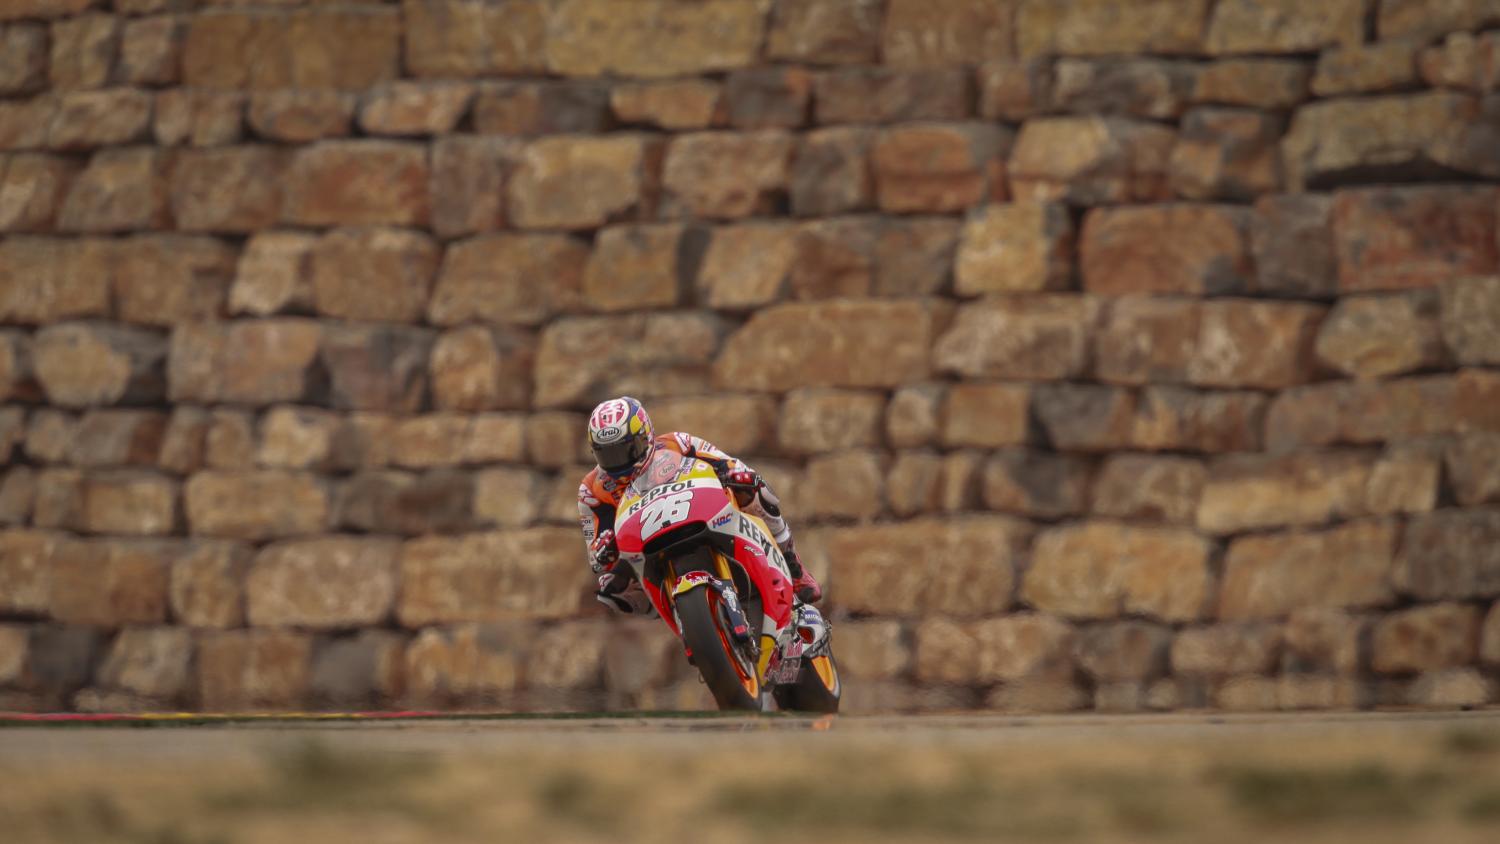 Gran Premio de Aragón MotoGp: Dani Pedrosa manda en los libres